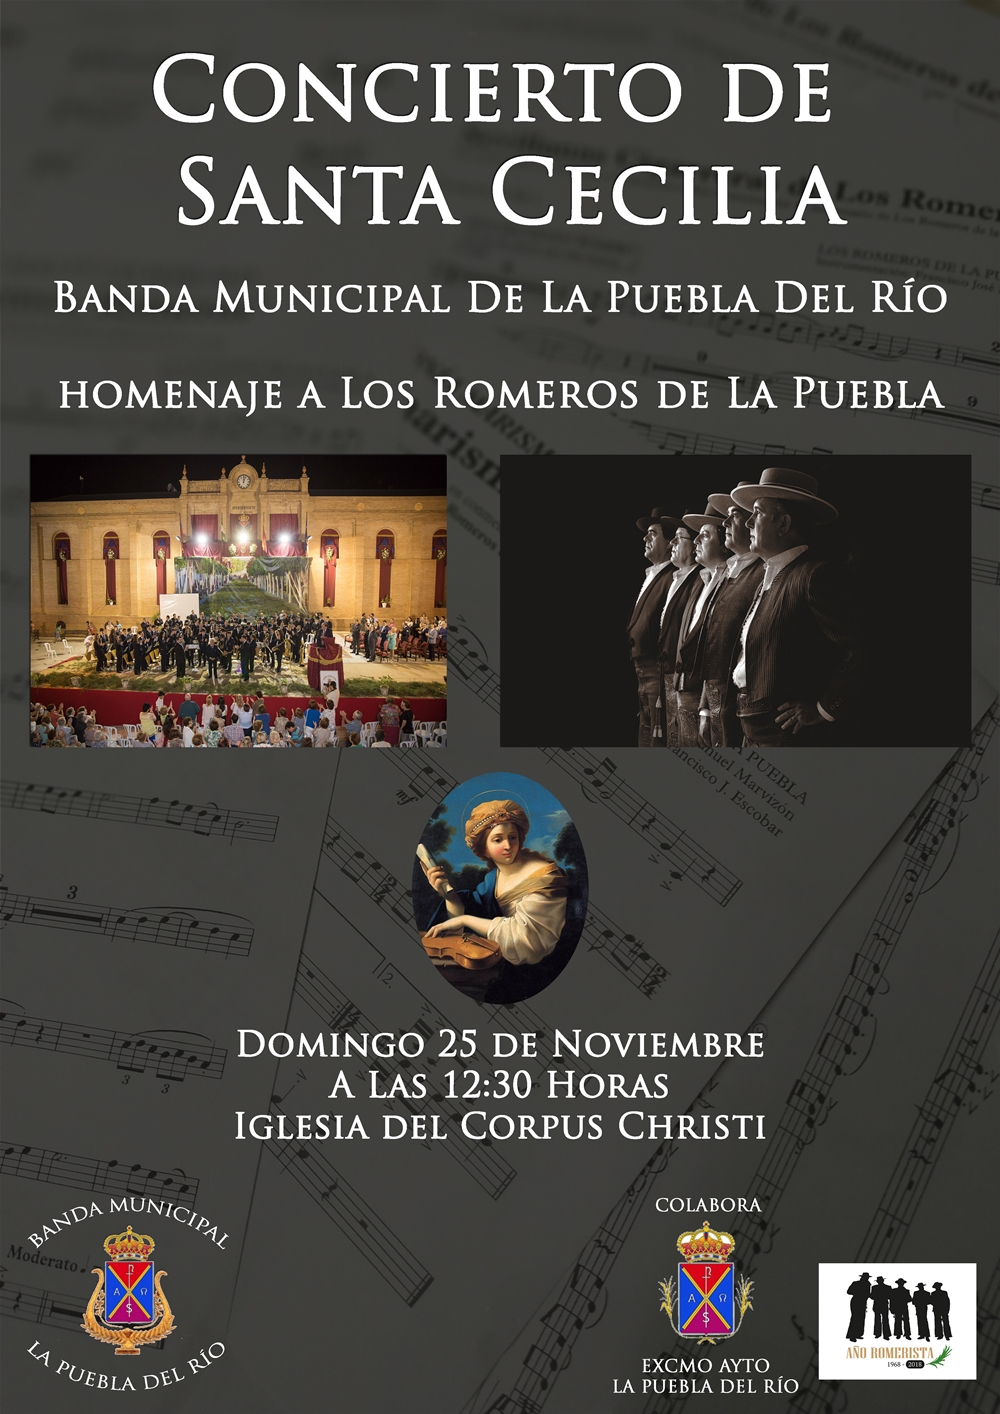 La Banda Municipal de La Puebla del Río homenajeará a Los Romeros de La Puebla  en su Concierto de Santa Cecilia